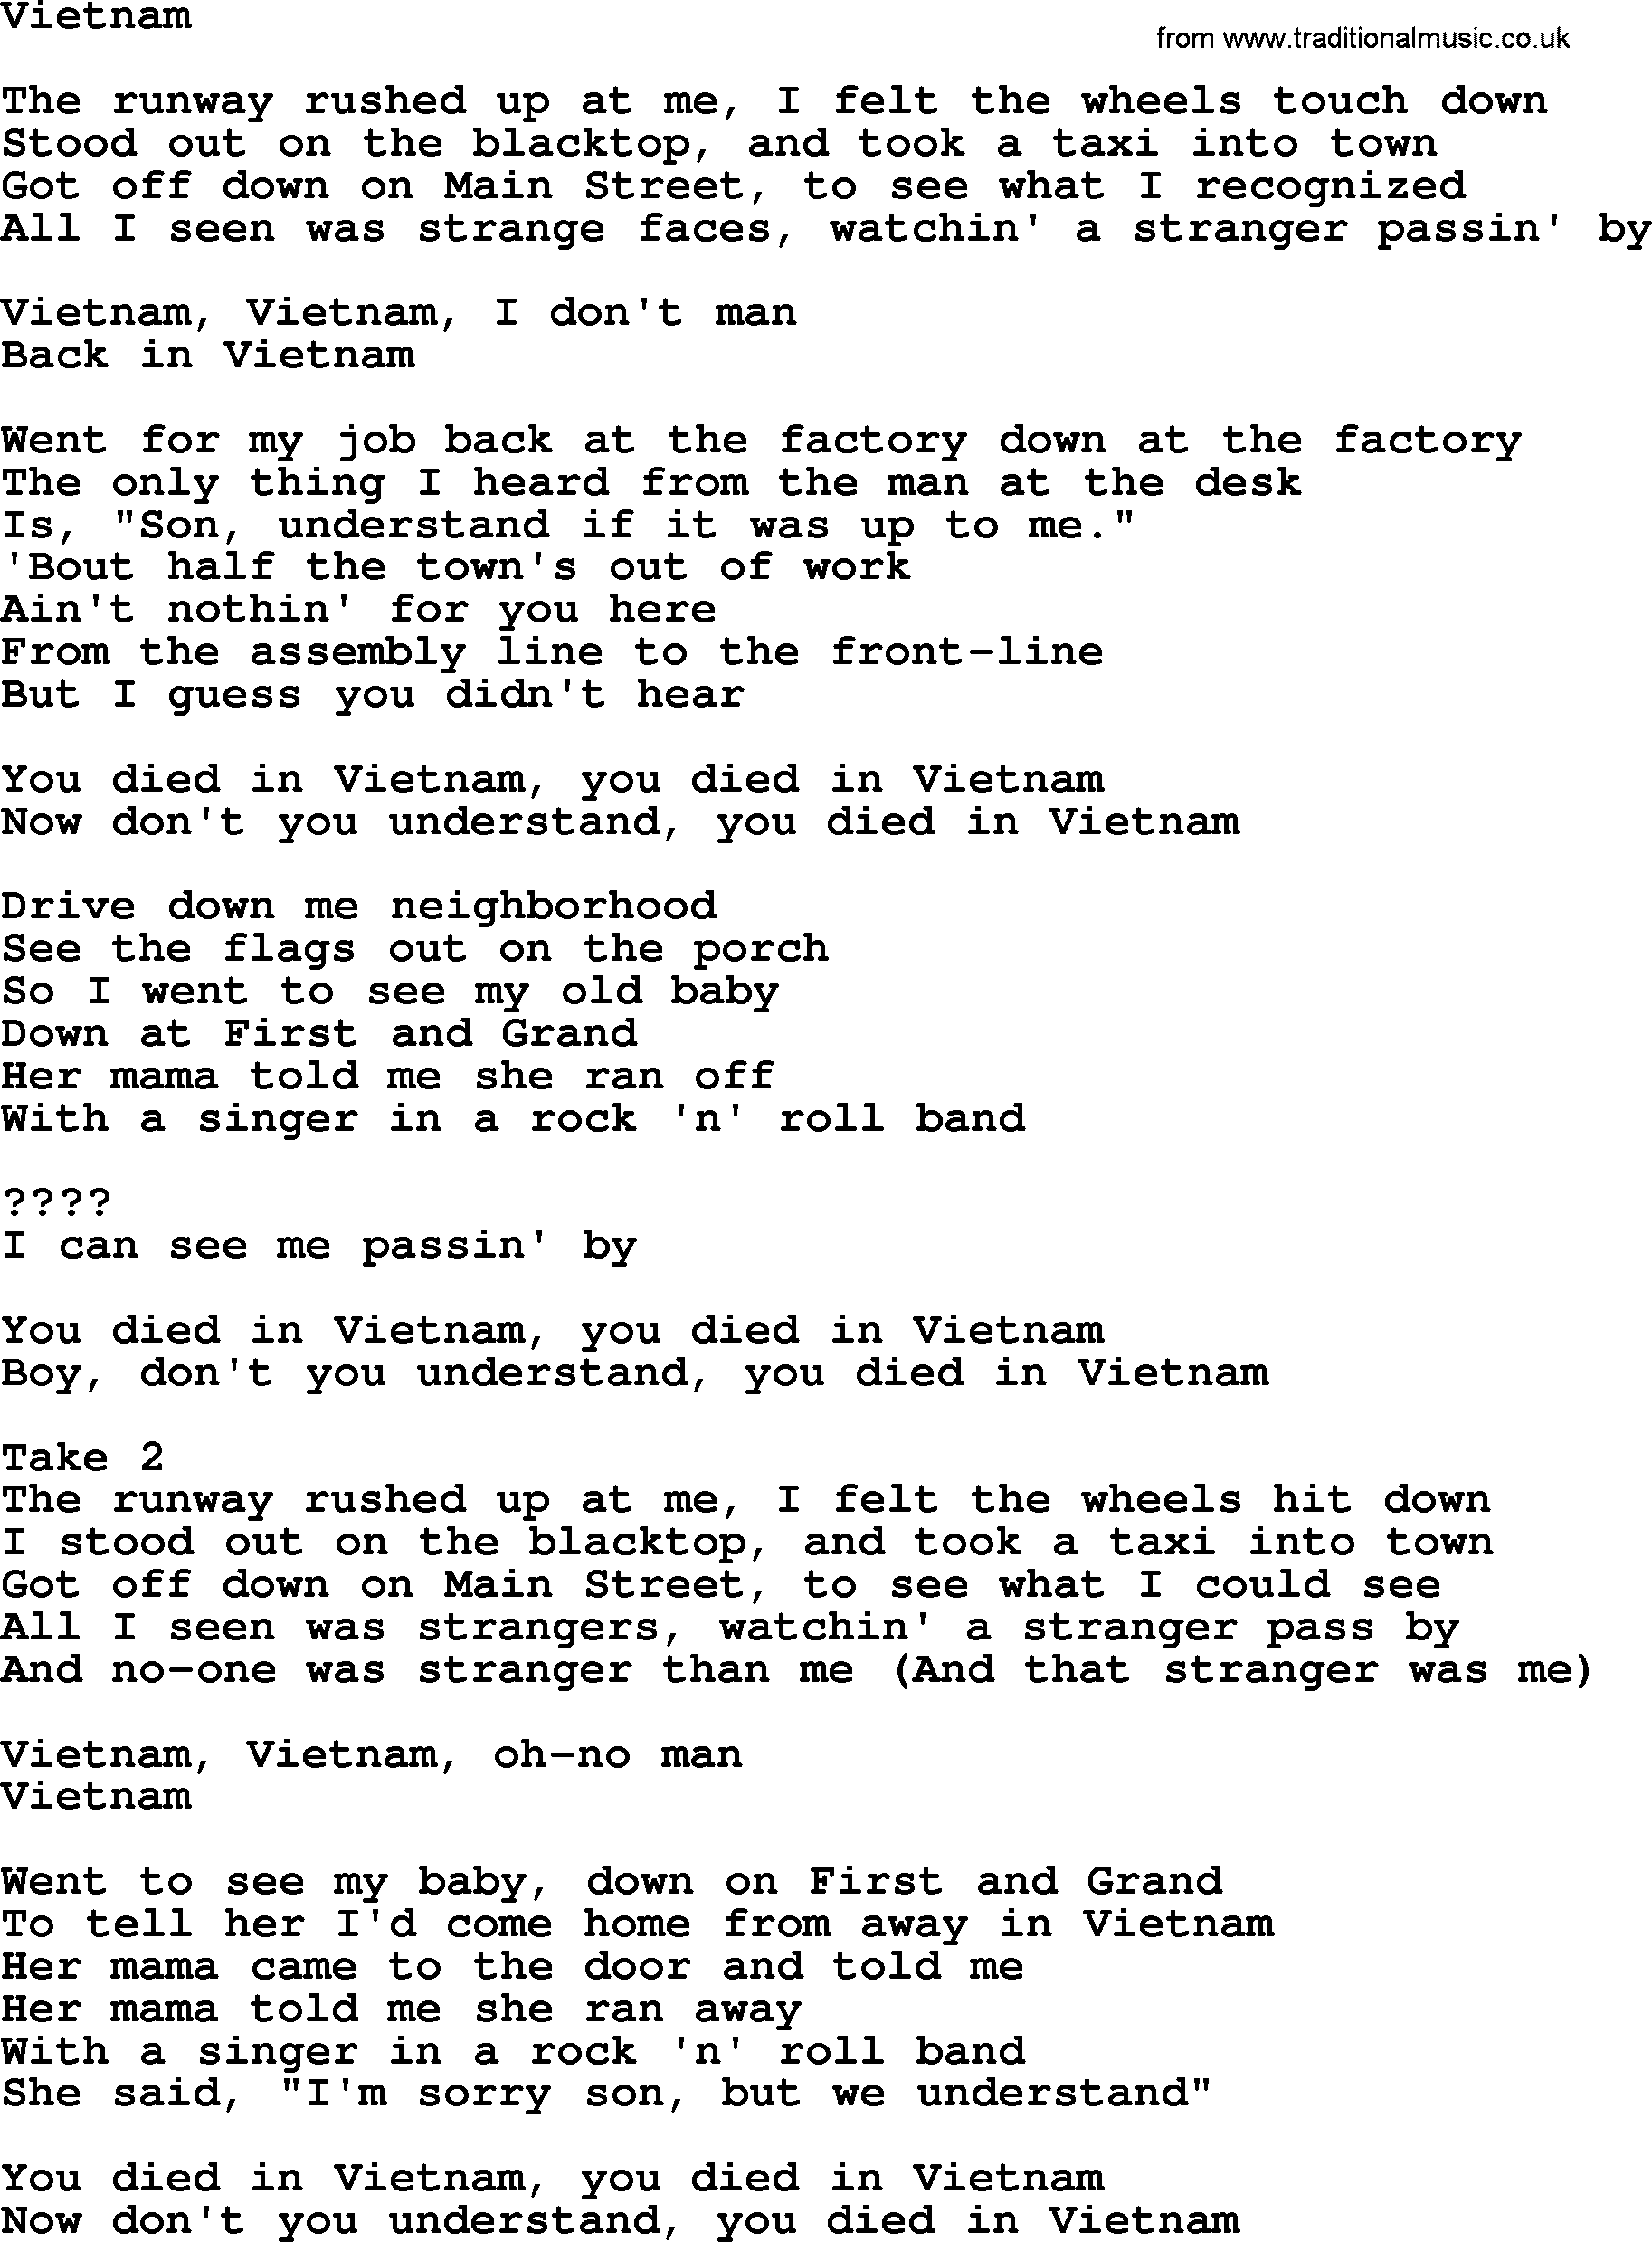 Bruce Springsteen song: Vietnam lyrics